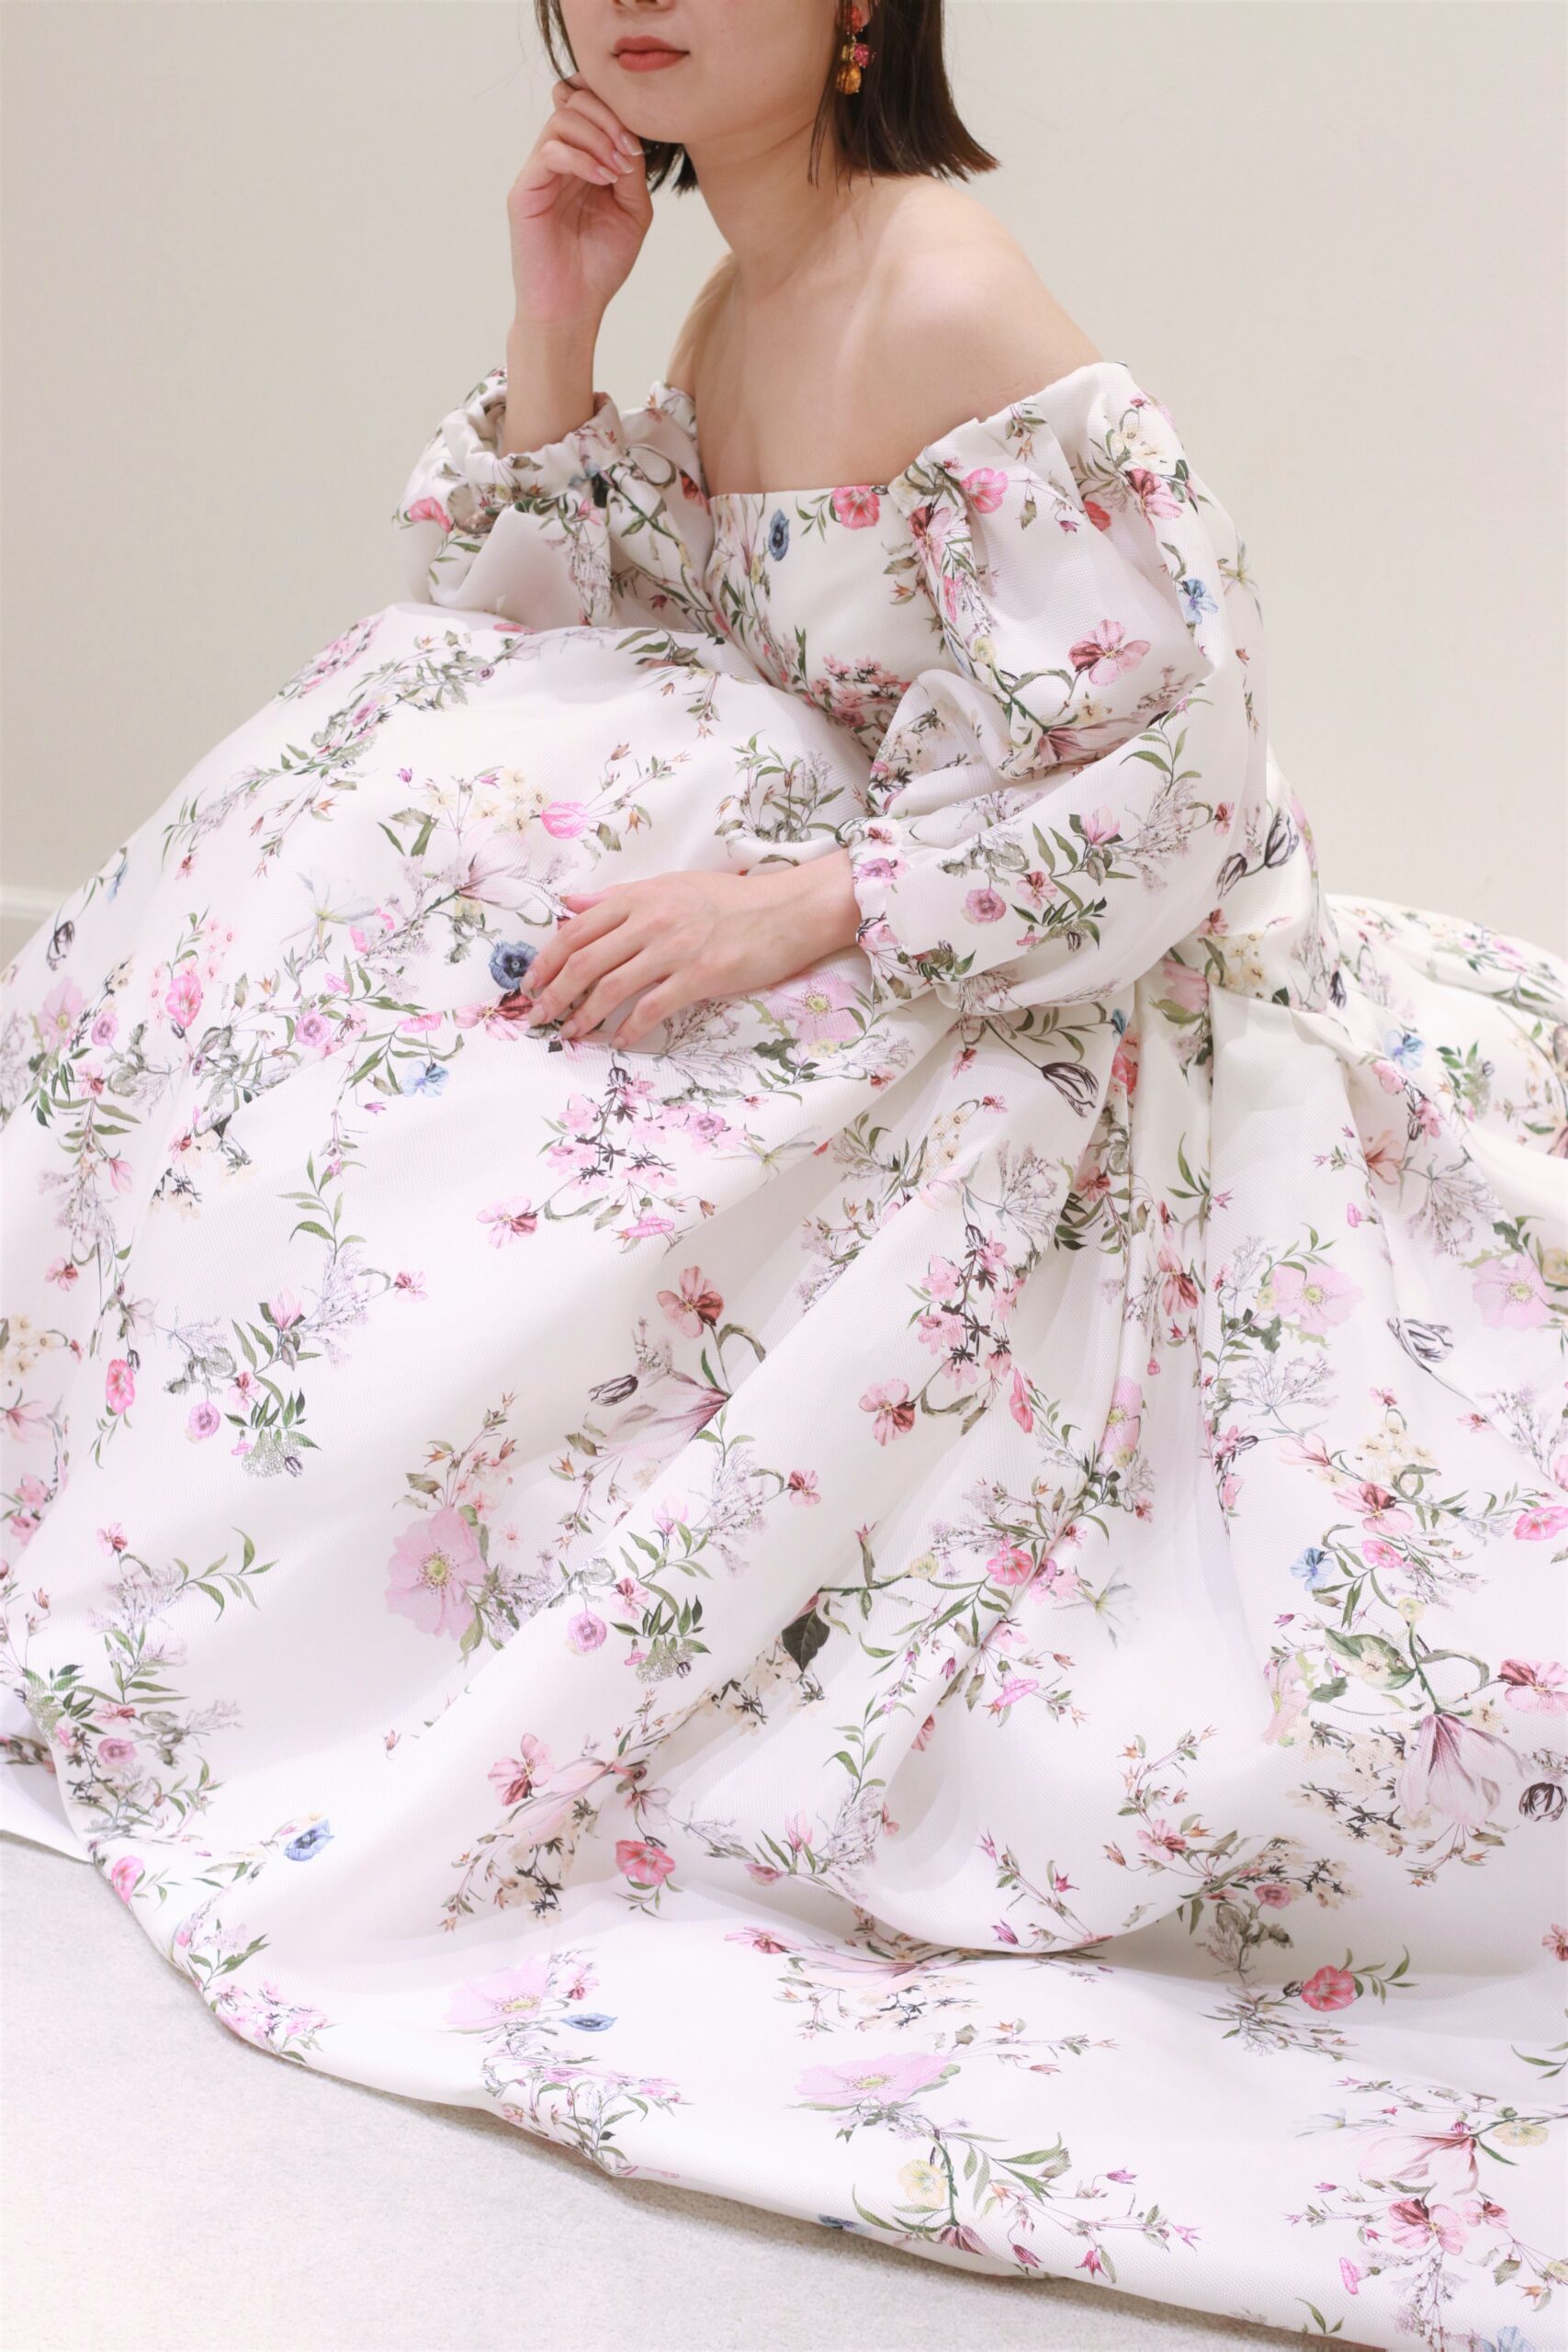 モニークルイリエの新作、淡いピンクのフラワーデザインが魅力のカラードレスは、サムシングカラーである華やかなイヤリングと合わせてコーディネートをすることで、モダンでハッピーな雰囲気を演出いたします